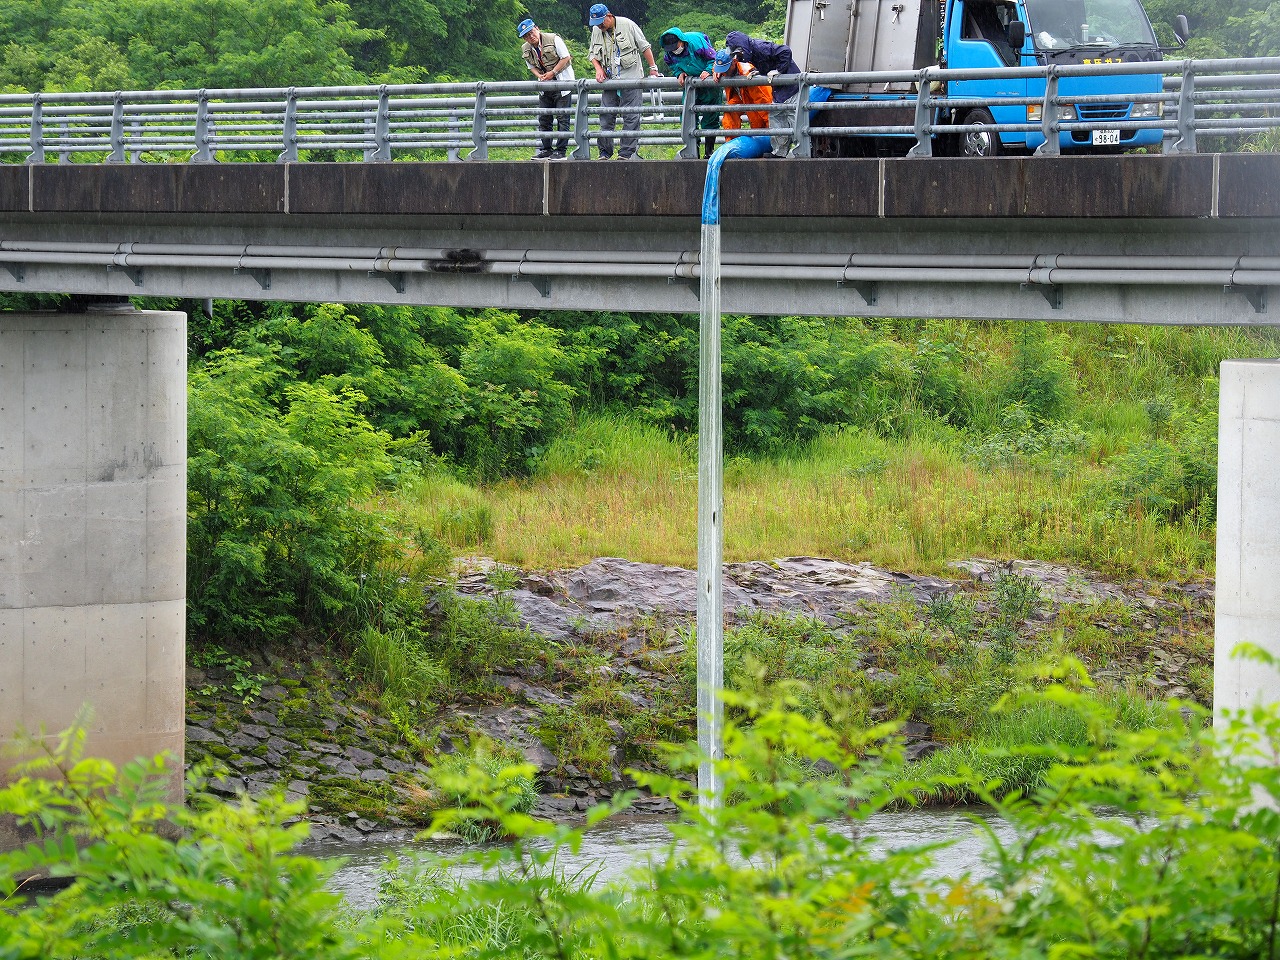 ７月からアユ釣り解禁 釈迦堂川で約１５００匹放流 阿武隈時報社